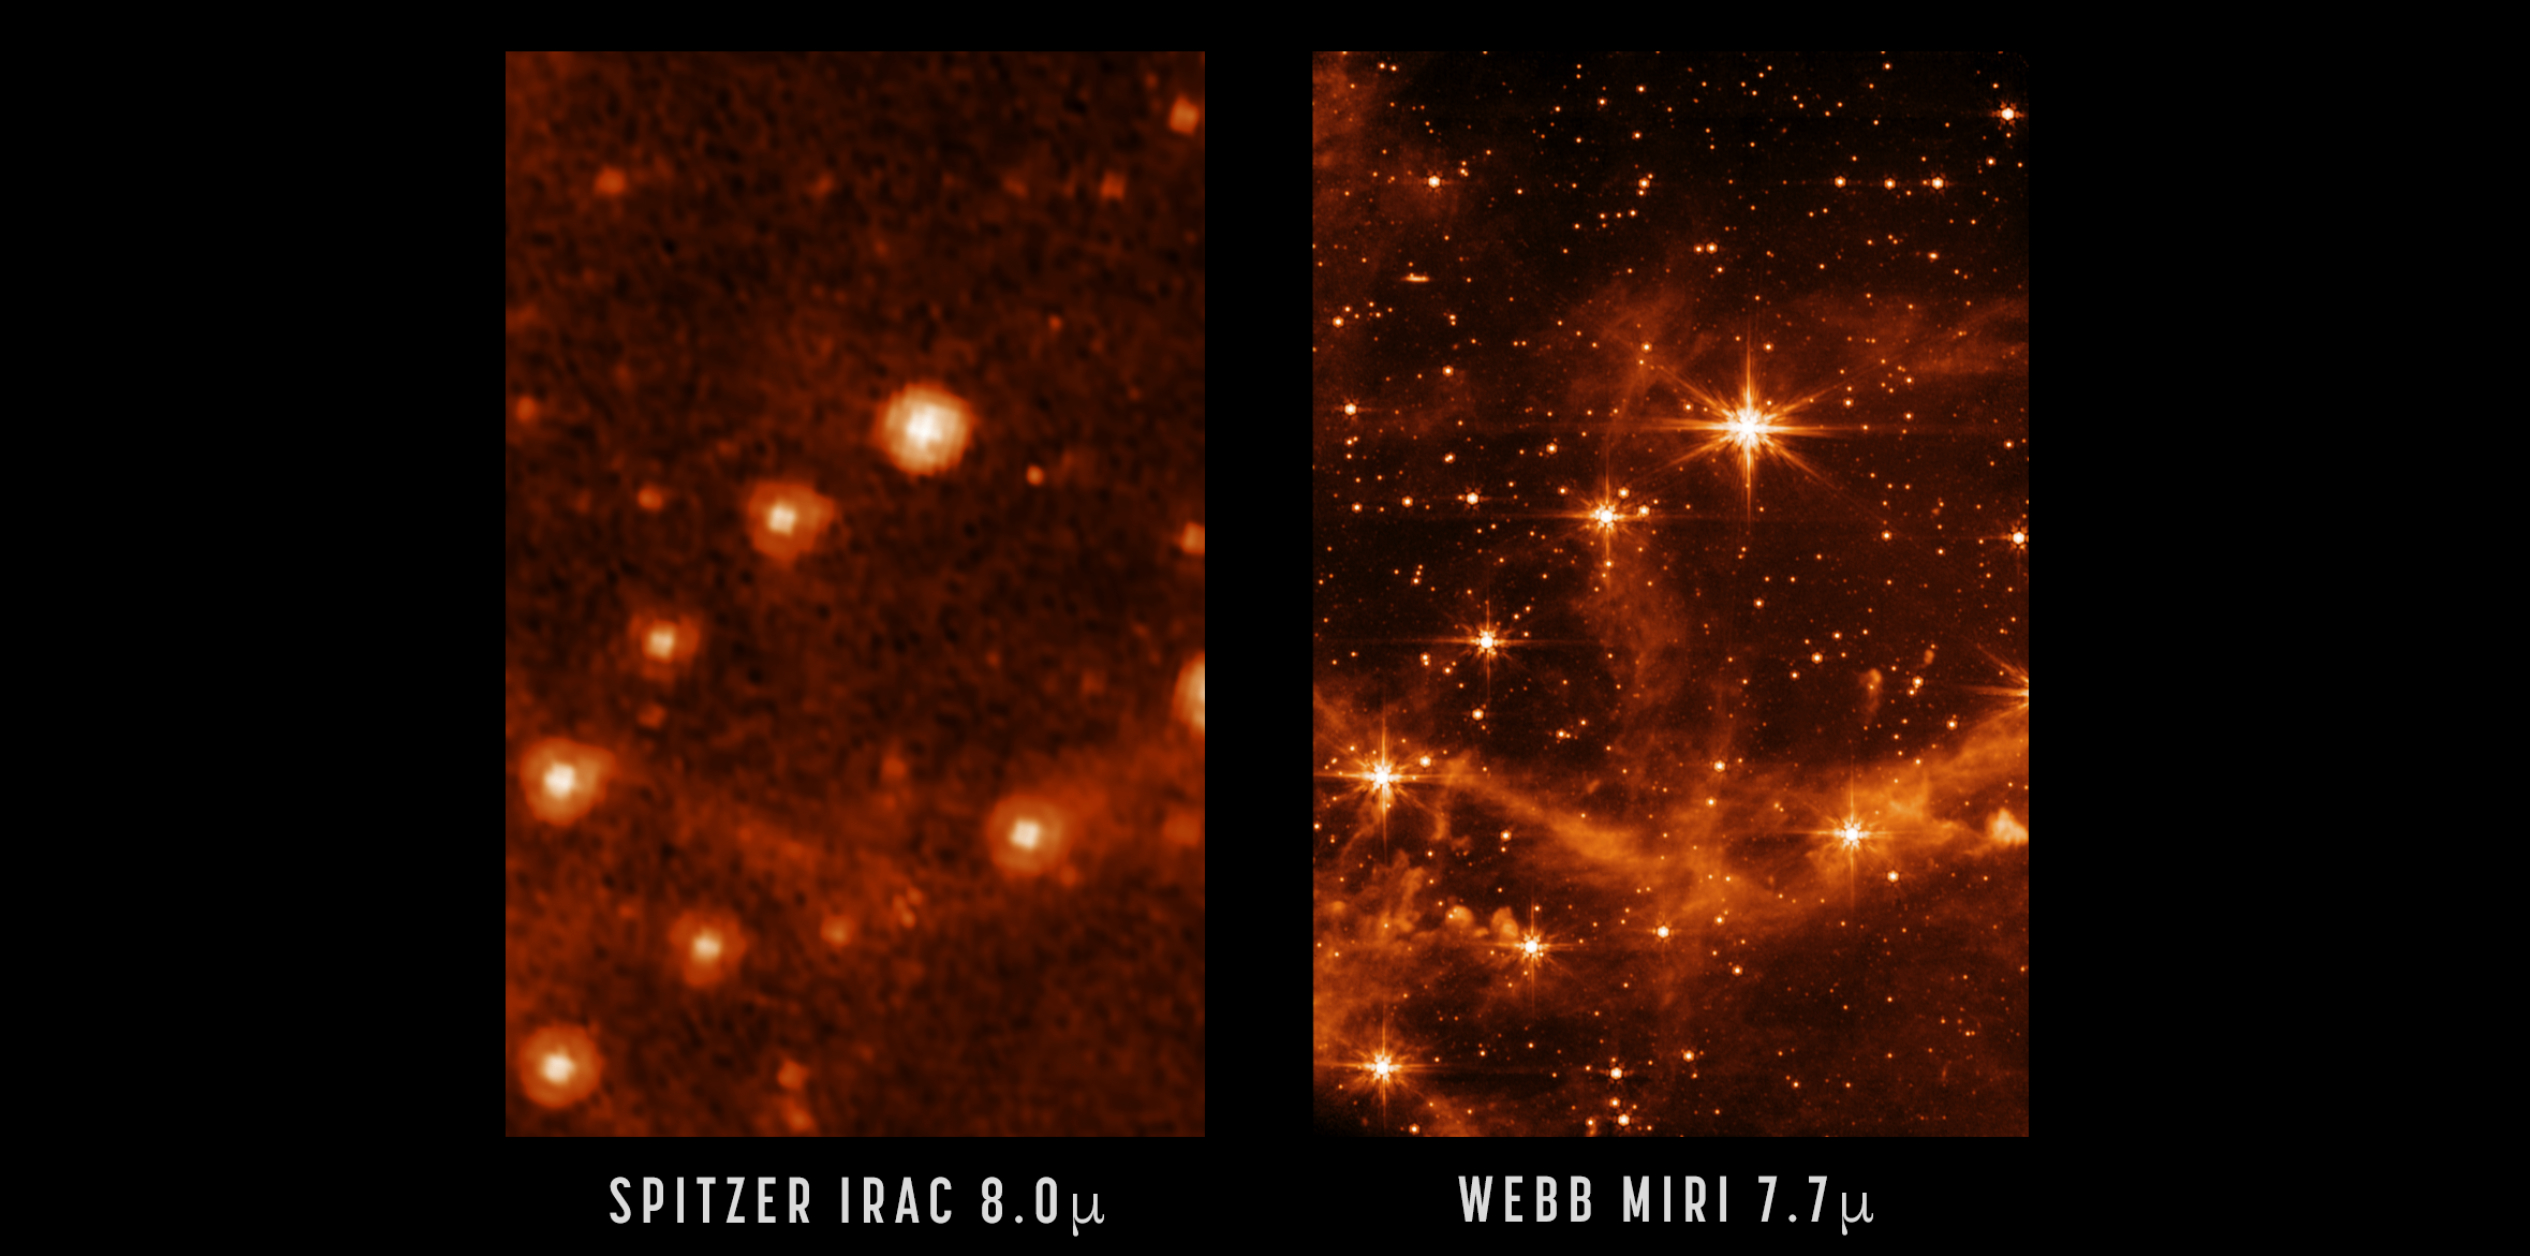 左：由史匹哲太空望远镜（已退役）拍摄的部分大麦哲伦星云；右：韦布上月发布以中红外线仪(MIRI)所拍摄的同一天区，可见细节更多更清晰。                                          图片鸣谢: Spitzer: NASA/JPL-Caltech; MIRI: NASA/ESA/CSA/STScI